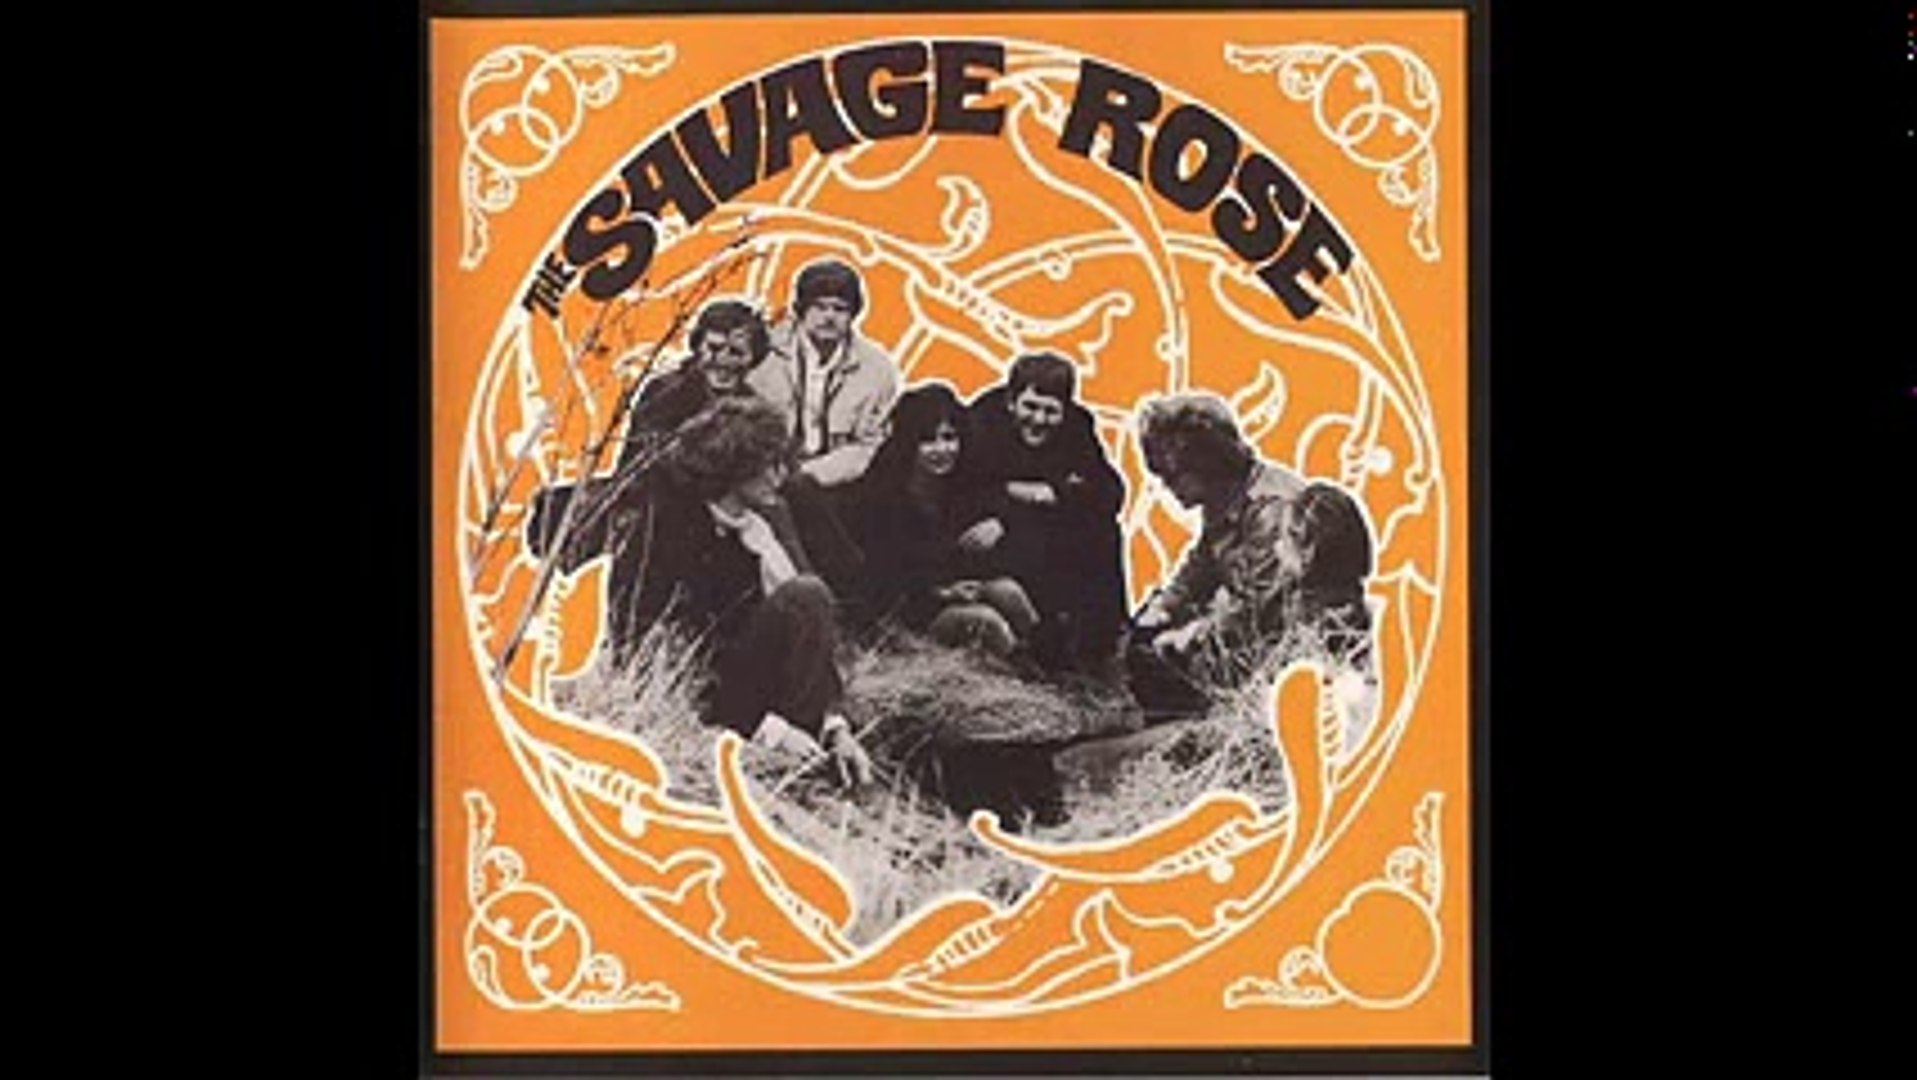 The Savage Rose - album The Savage Rose 1968 - Video Dailymotion